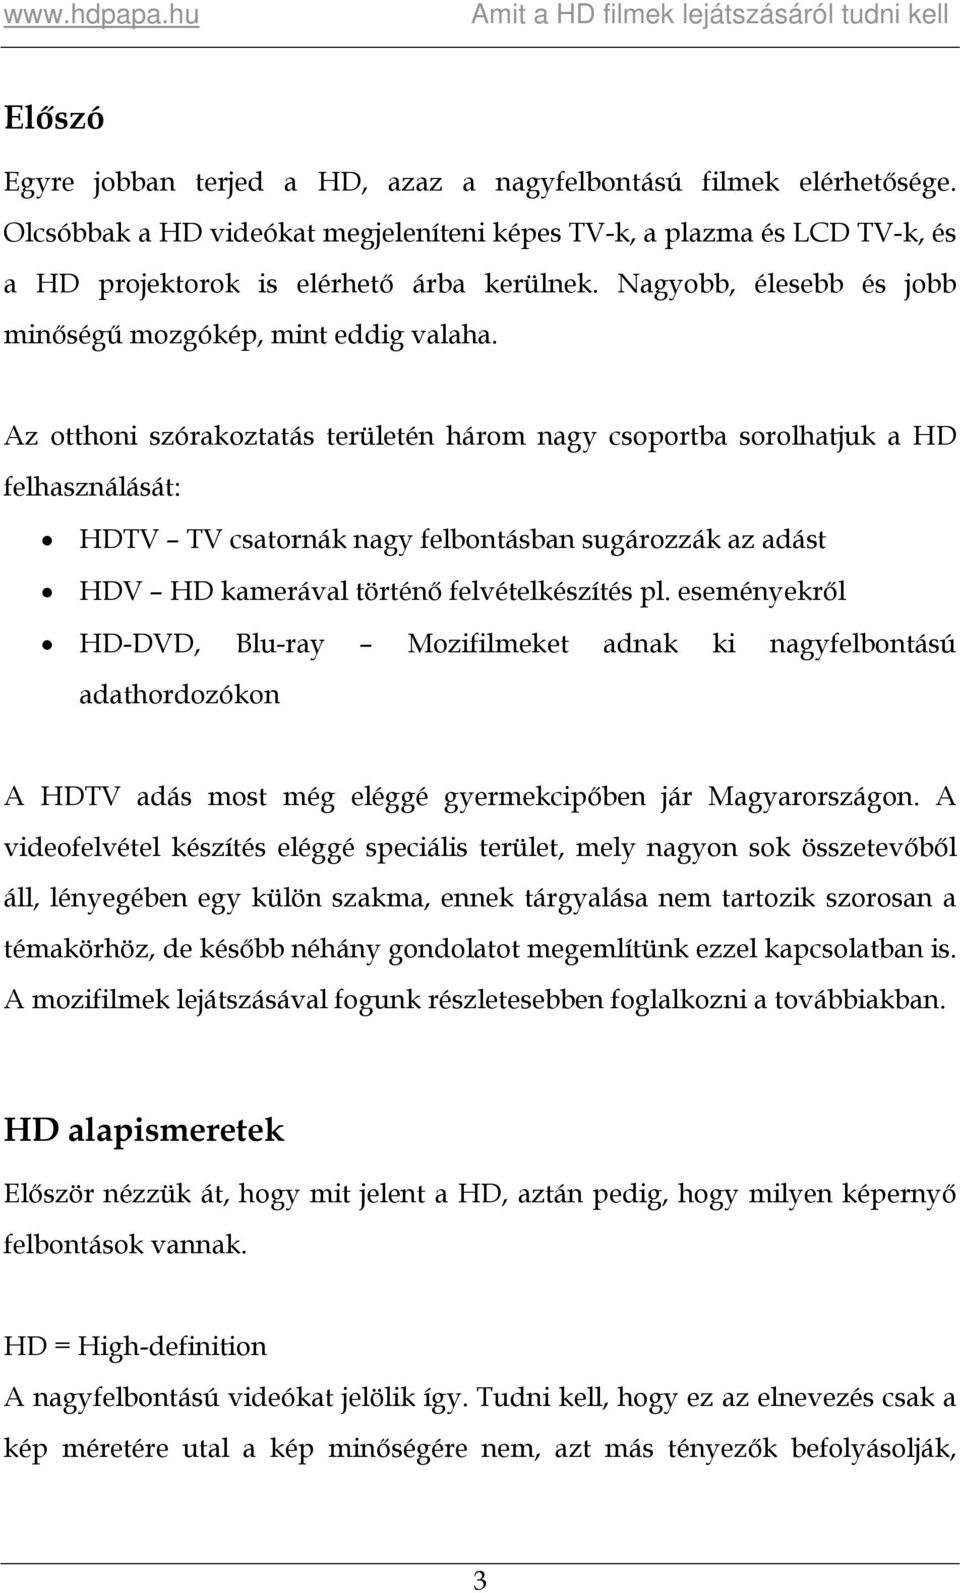 Az otthoni szórakoztatás területén három nagy csoportba sorolhatjuk a HD felhasználását: HDTV TV csatornák nagy felbontásban sugározzák az adást HDV HD kamerával történő felvételkészítés pl.